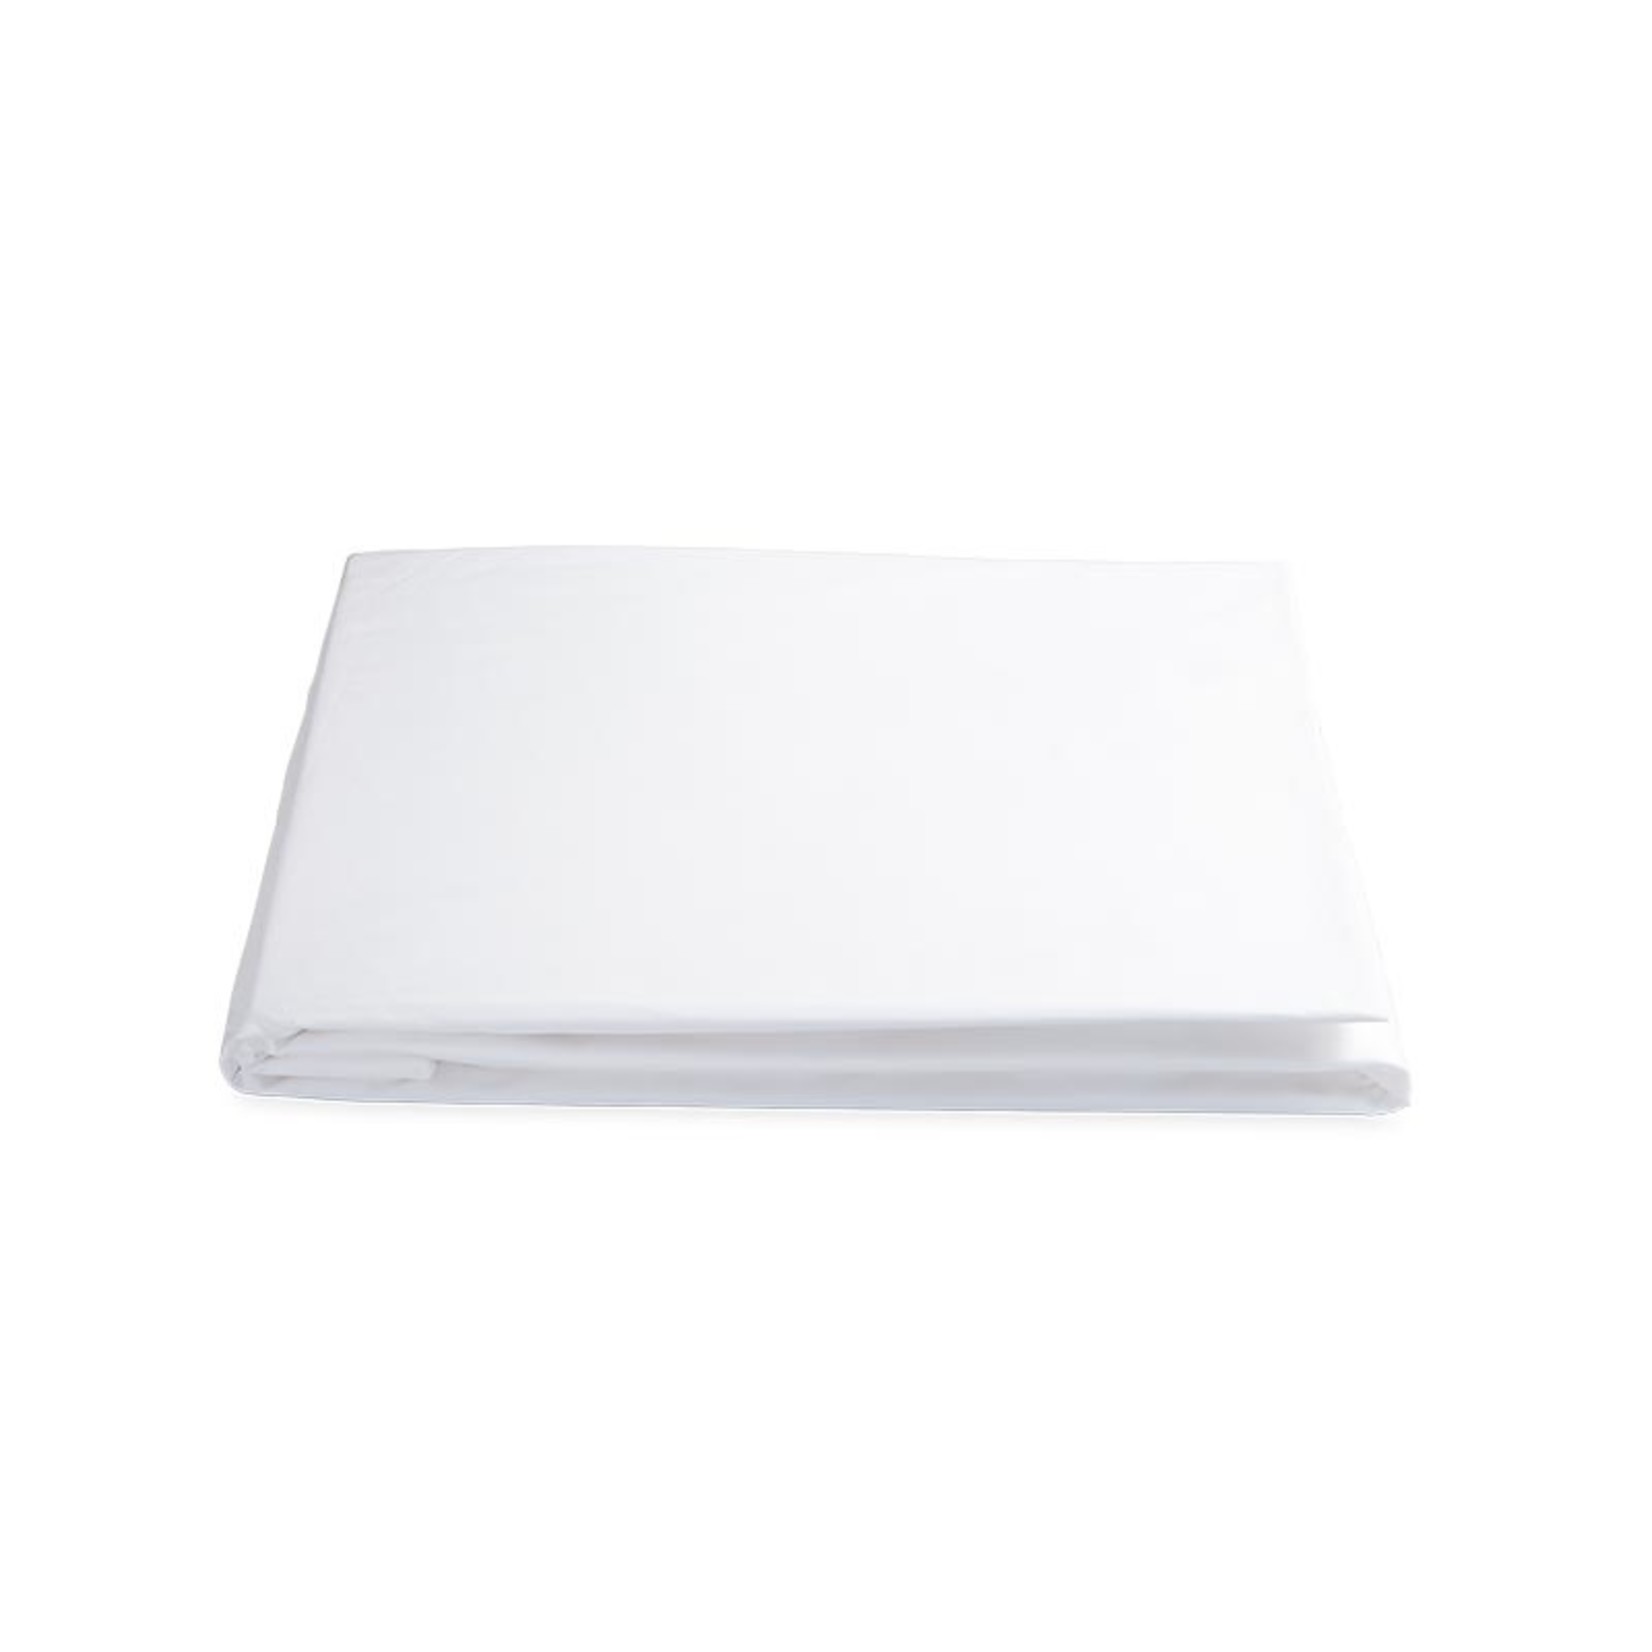 Matouk Sierra King Fitted Sheet - White